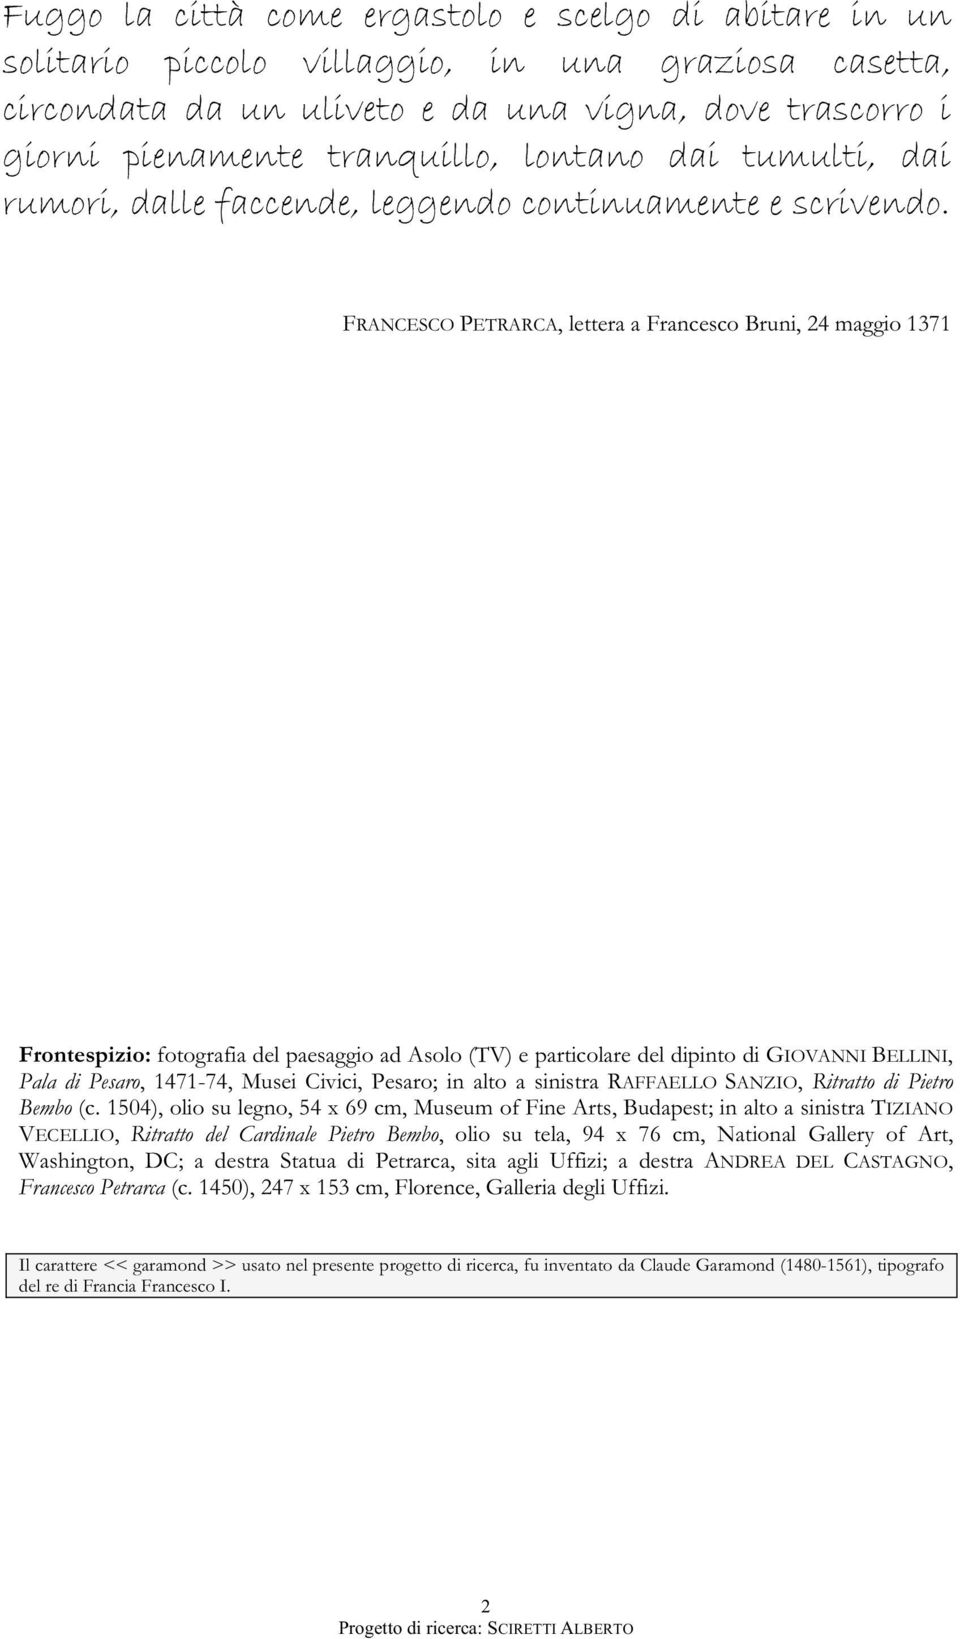 FRANCESCO PETRARCA, lettera a Francesco Bruni, 24 maggio 1371 Frontespizio: fotografia del paesaggio ad Asolo (TV) e particolare del dipinto di GIOVANNI BELLINI, Pala di Pesaro, 1471-74, Musei